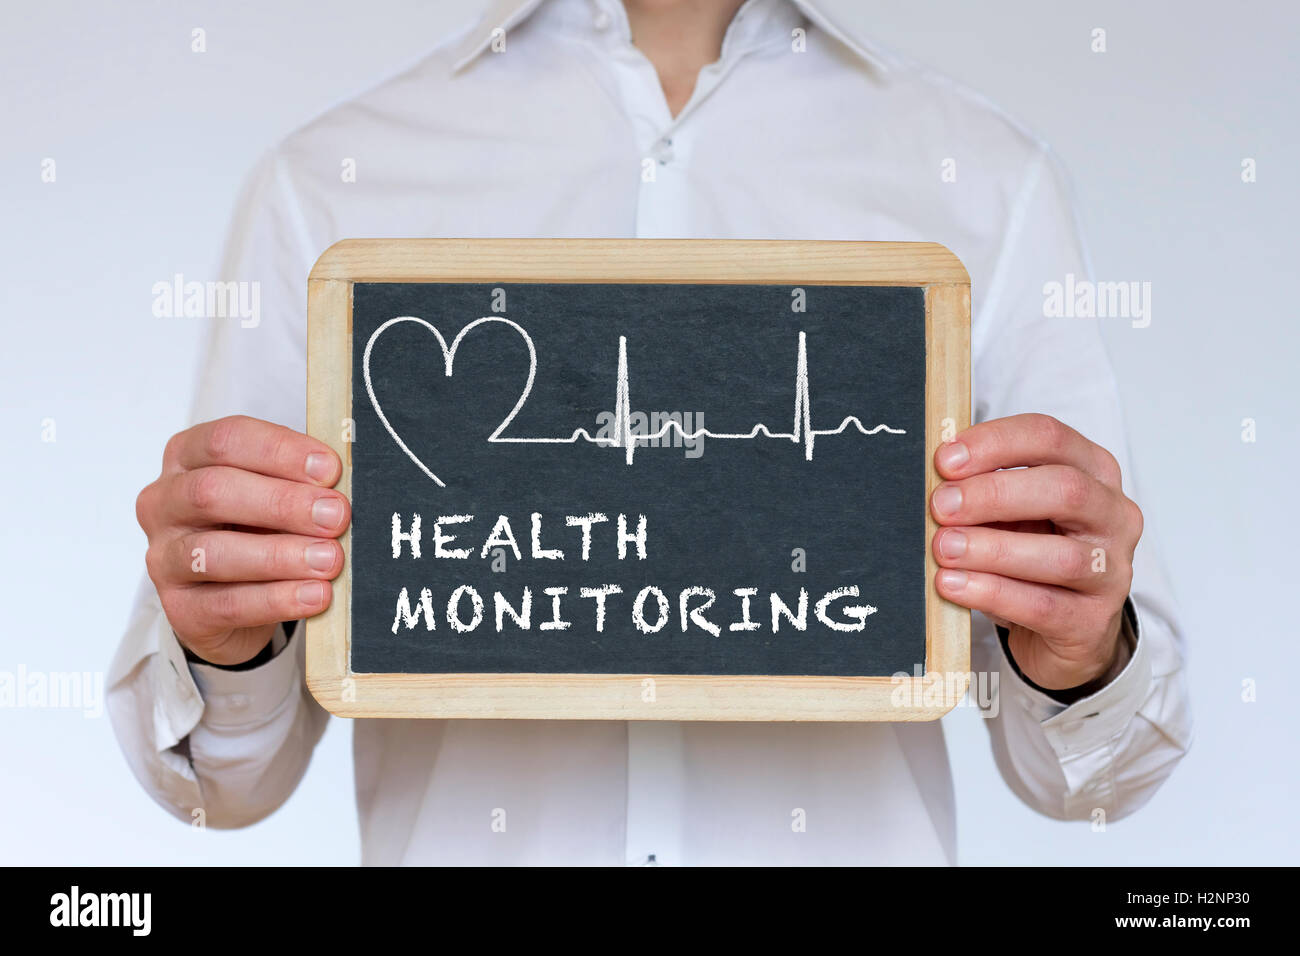 Health monitoring illustration written on chalkboard Stock Photo